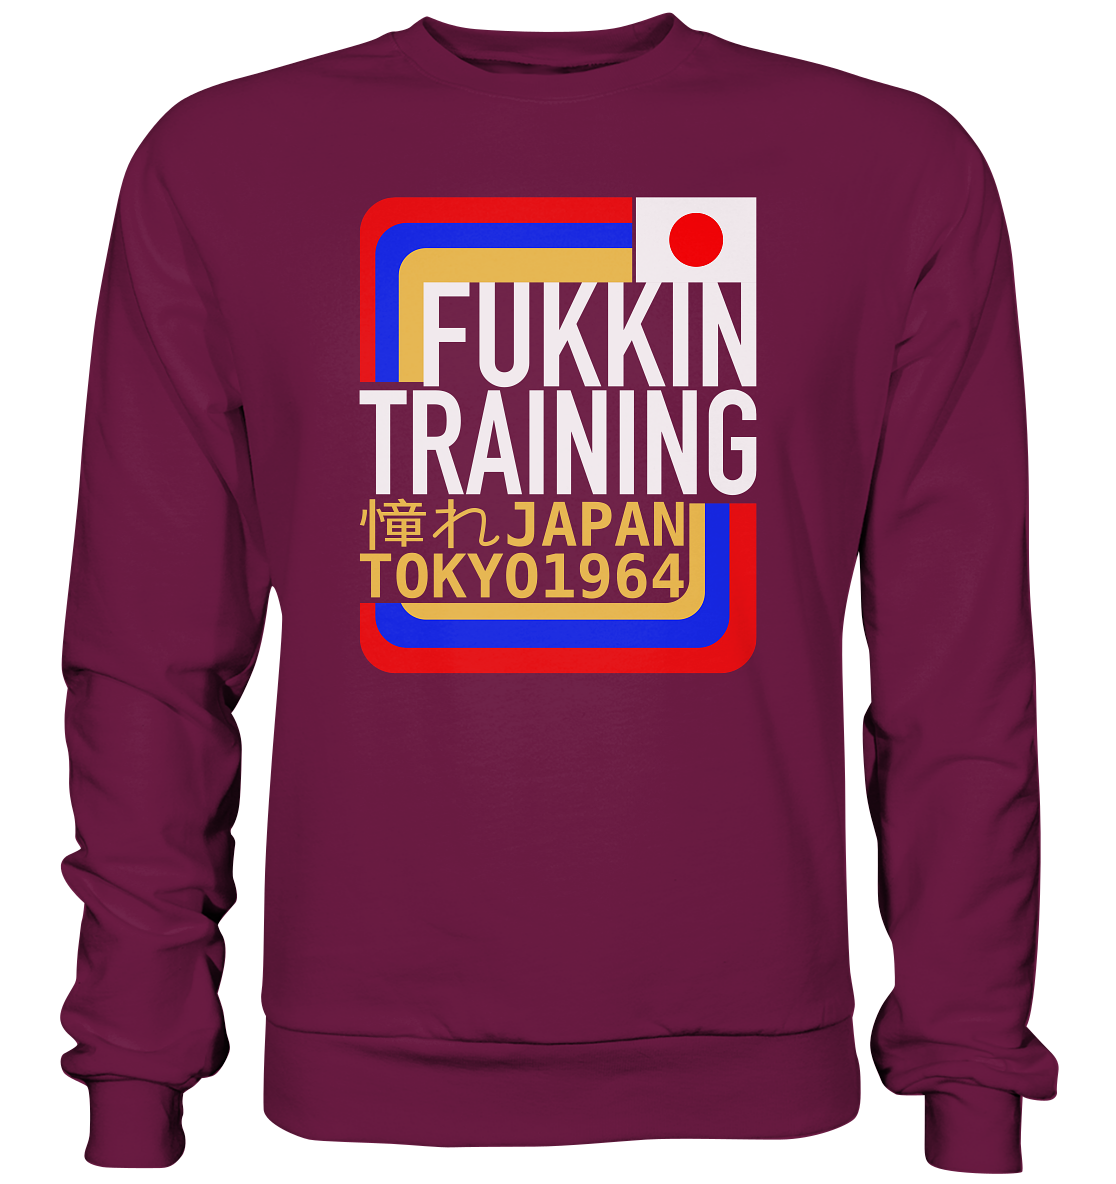 Fukkin Training in Tokyo - Premium Sweatshirt